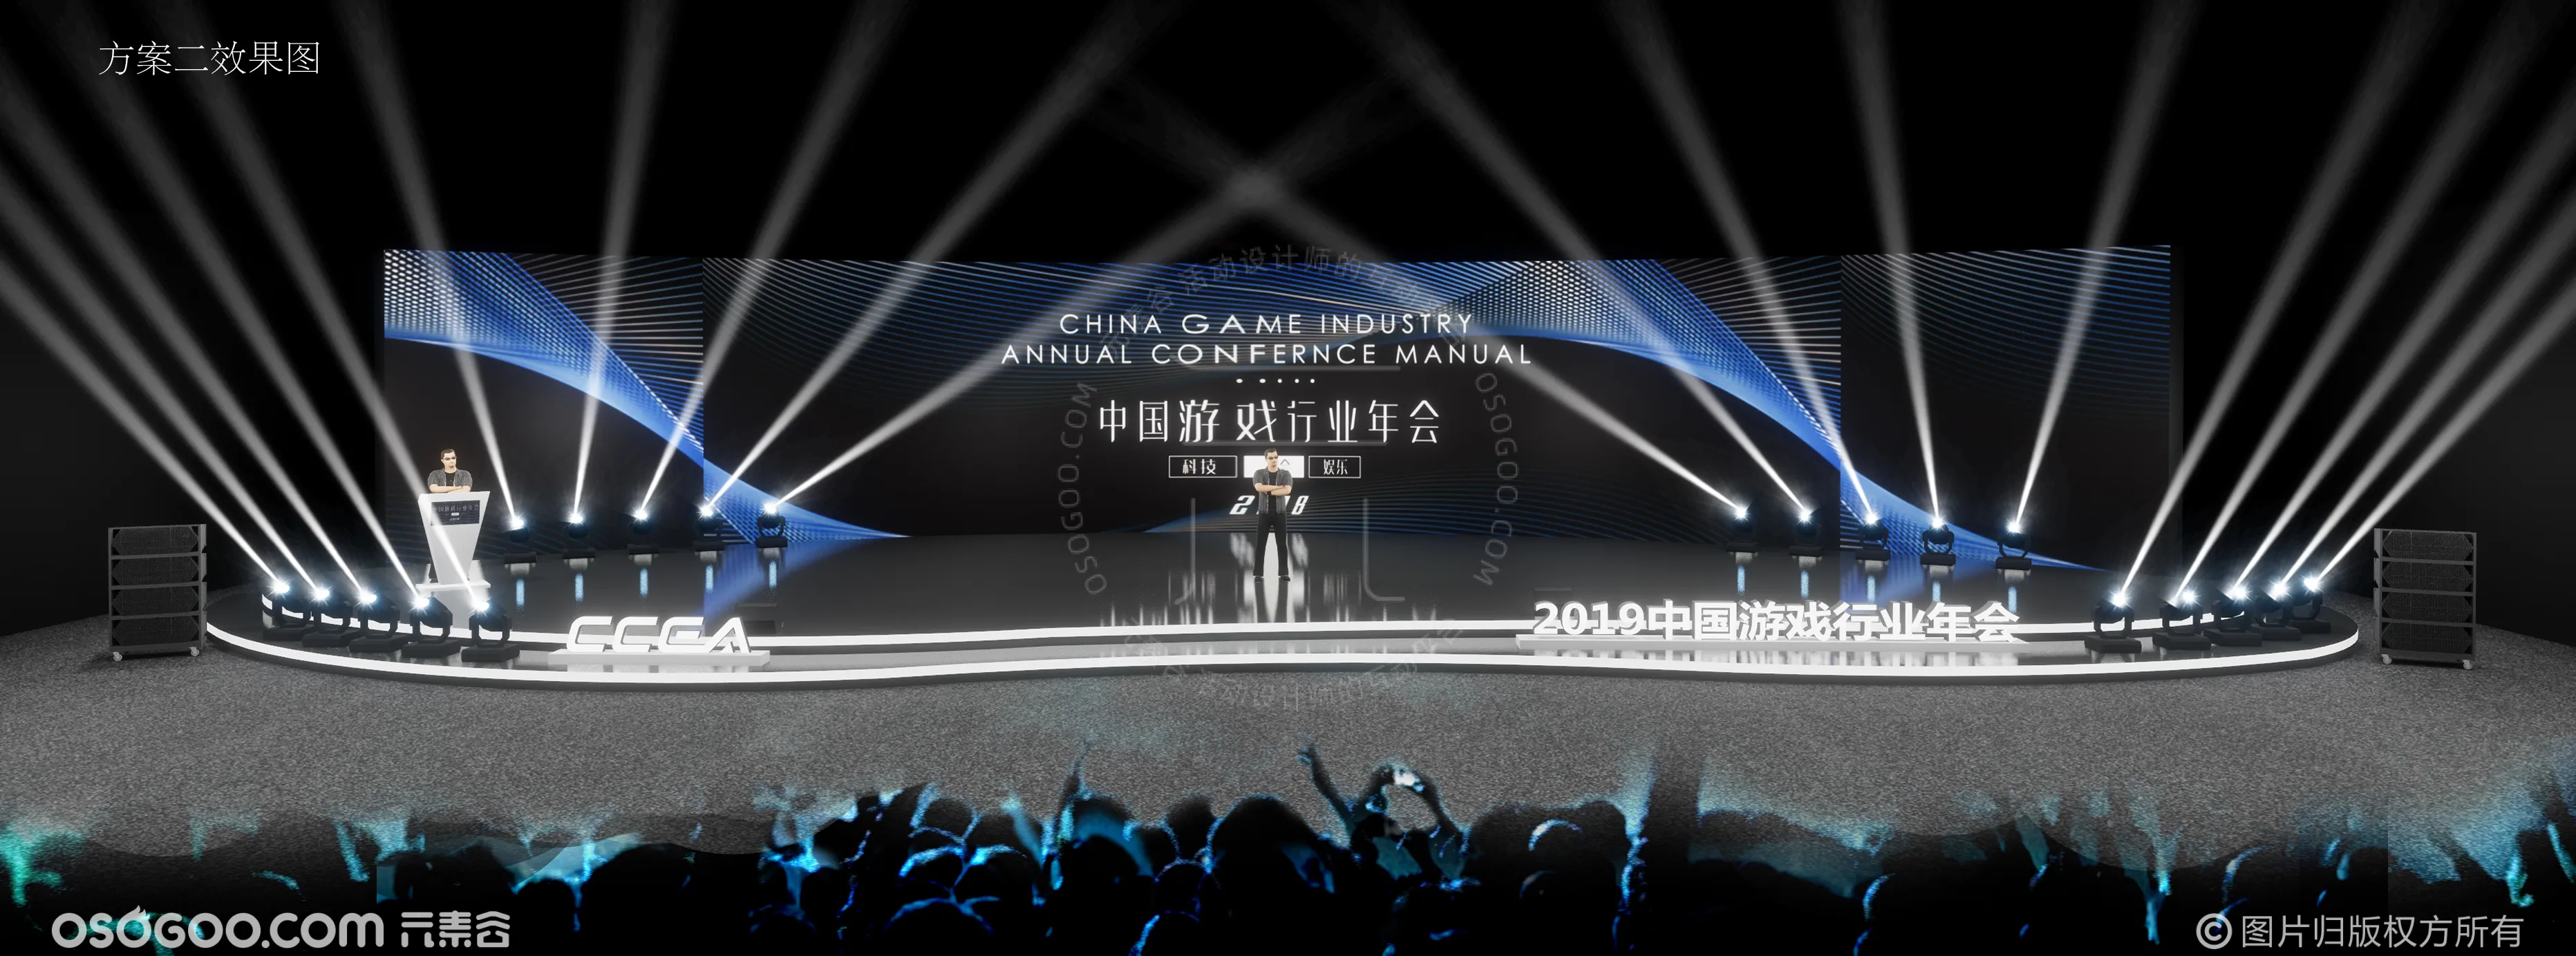 2019中国游戏行业年会